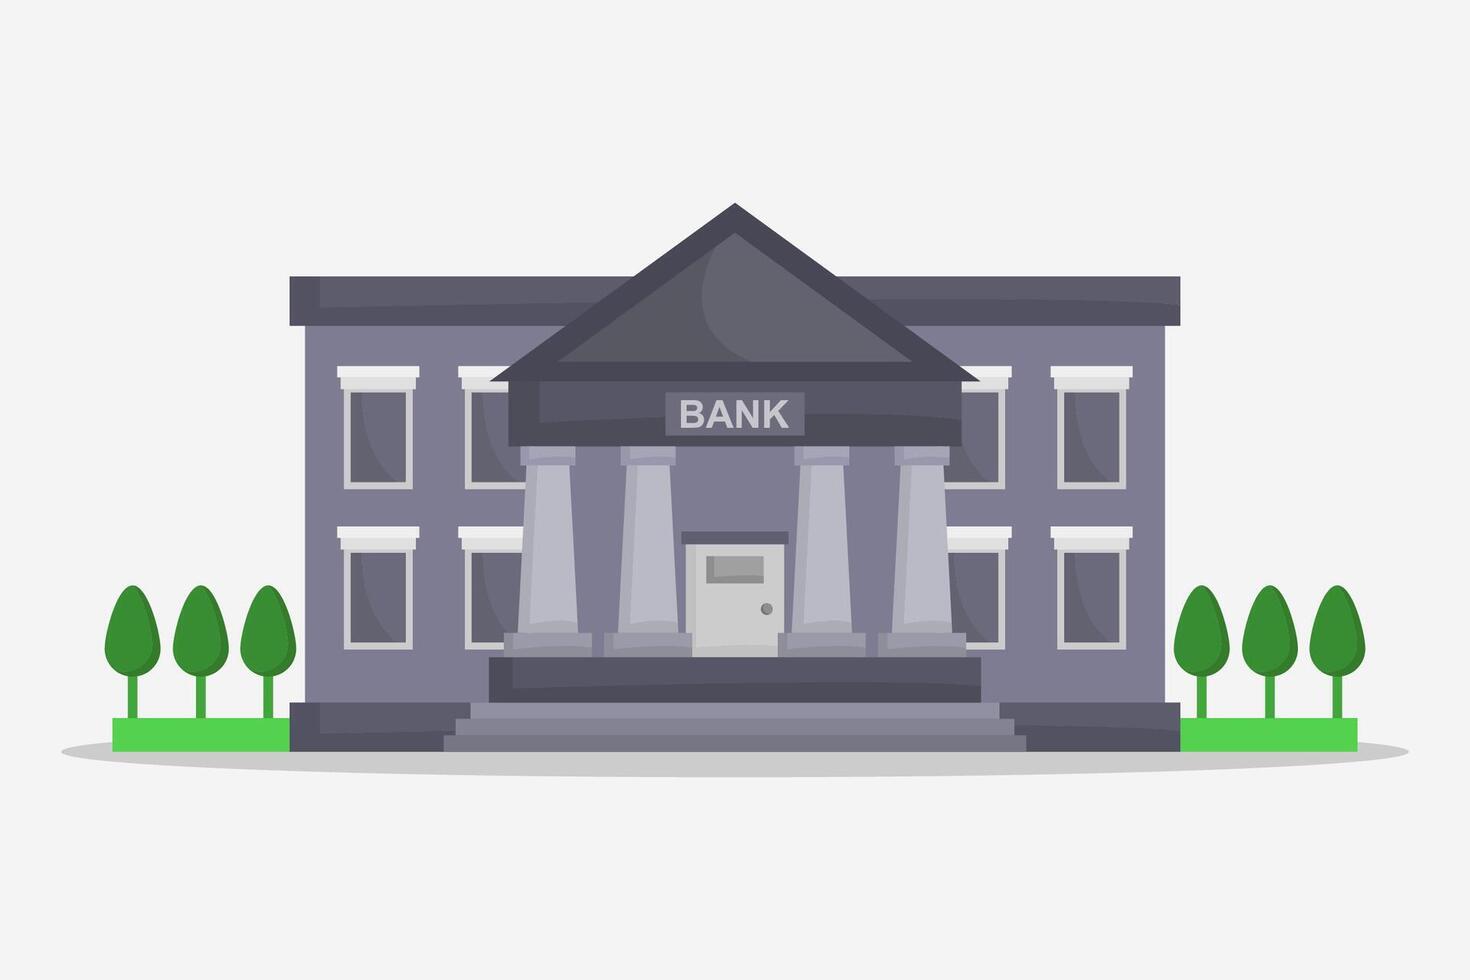 Bank illustrerade i vektor